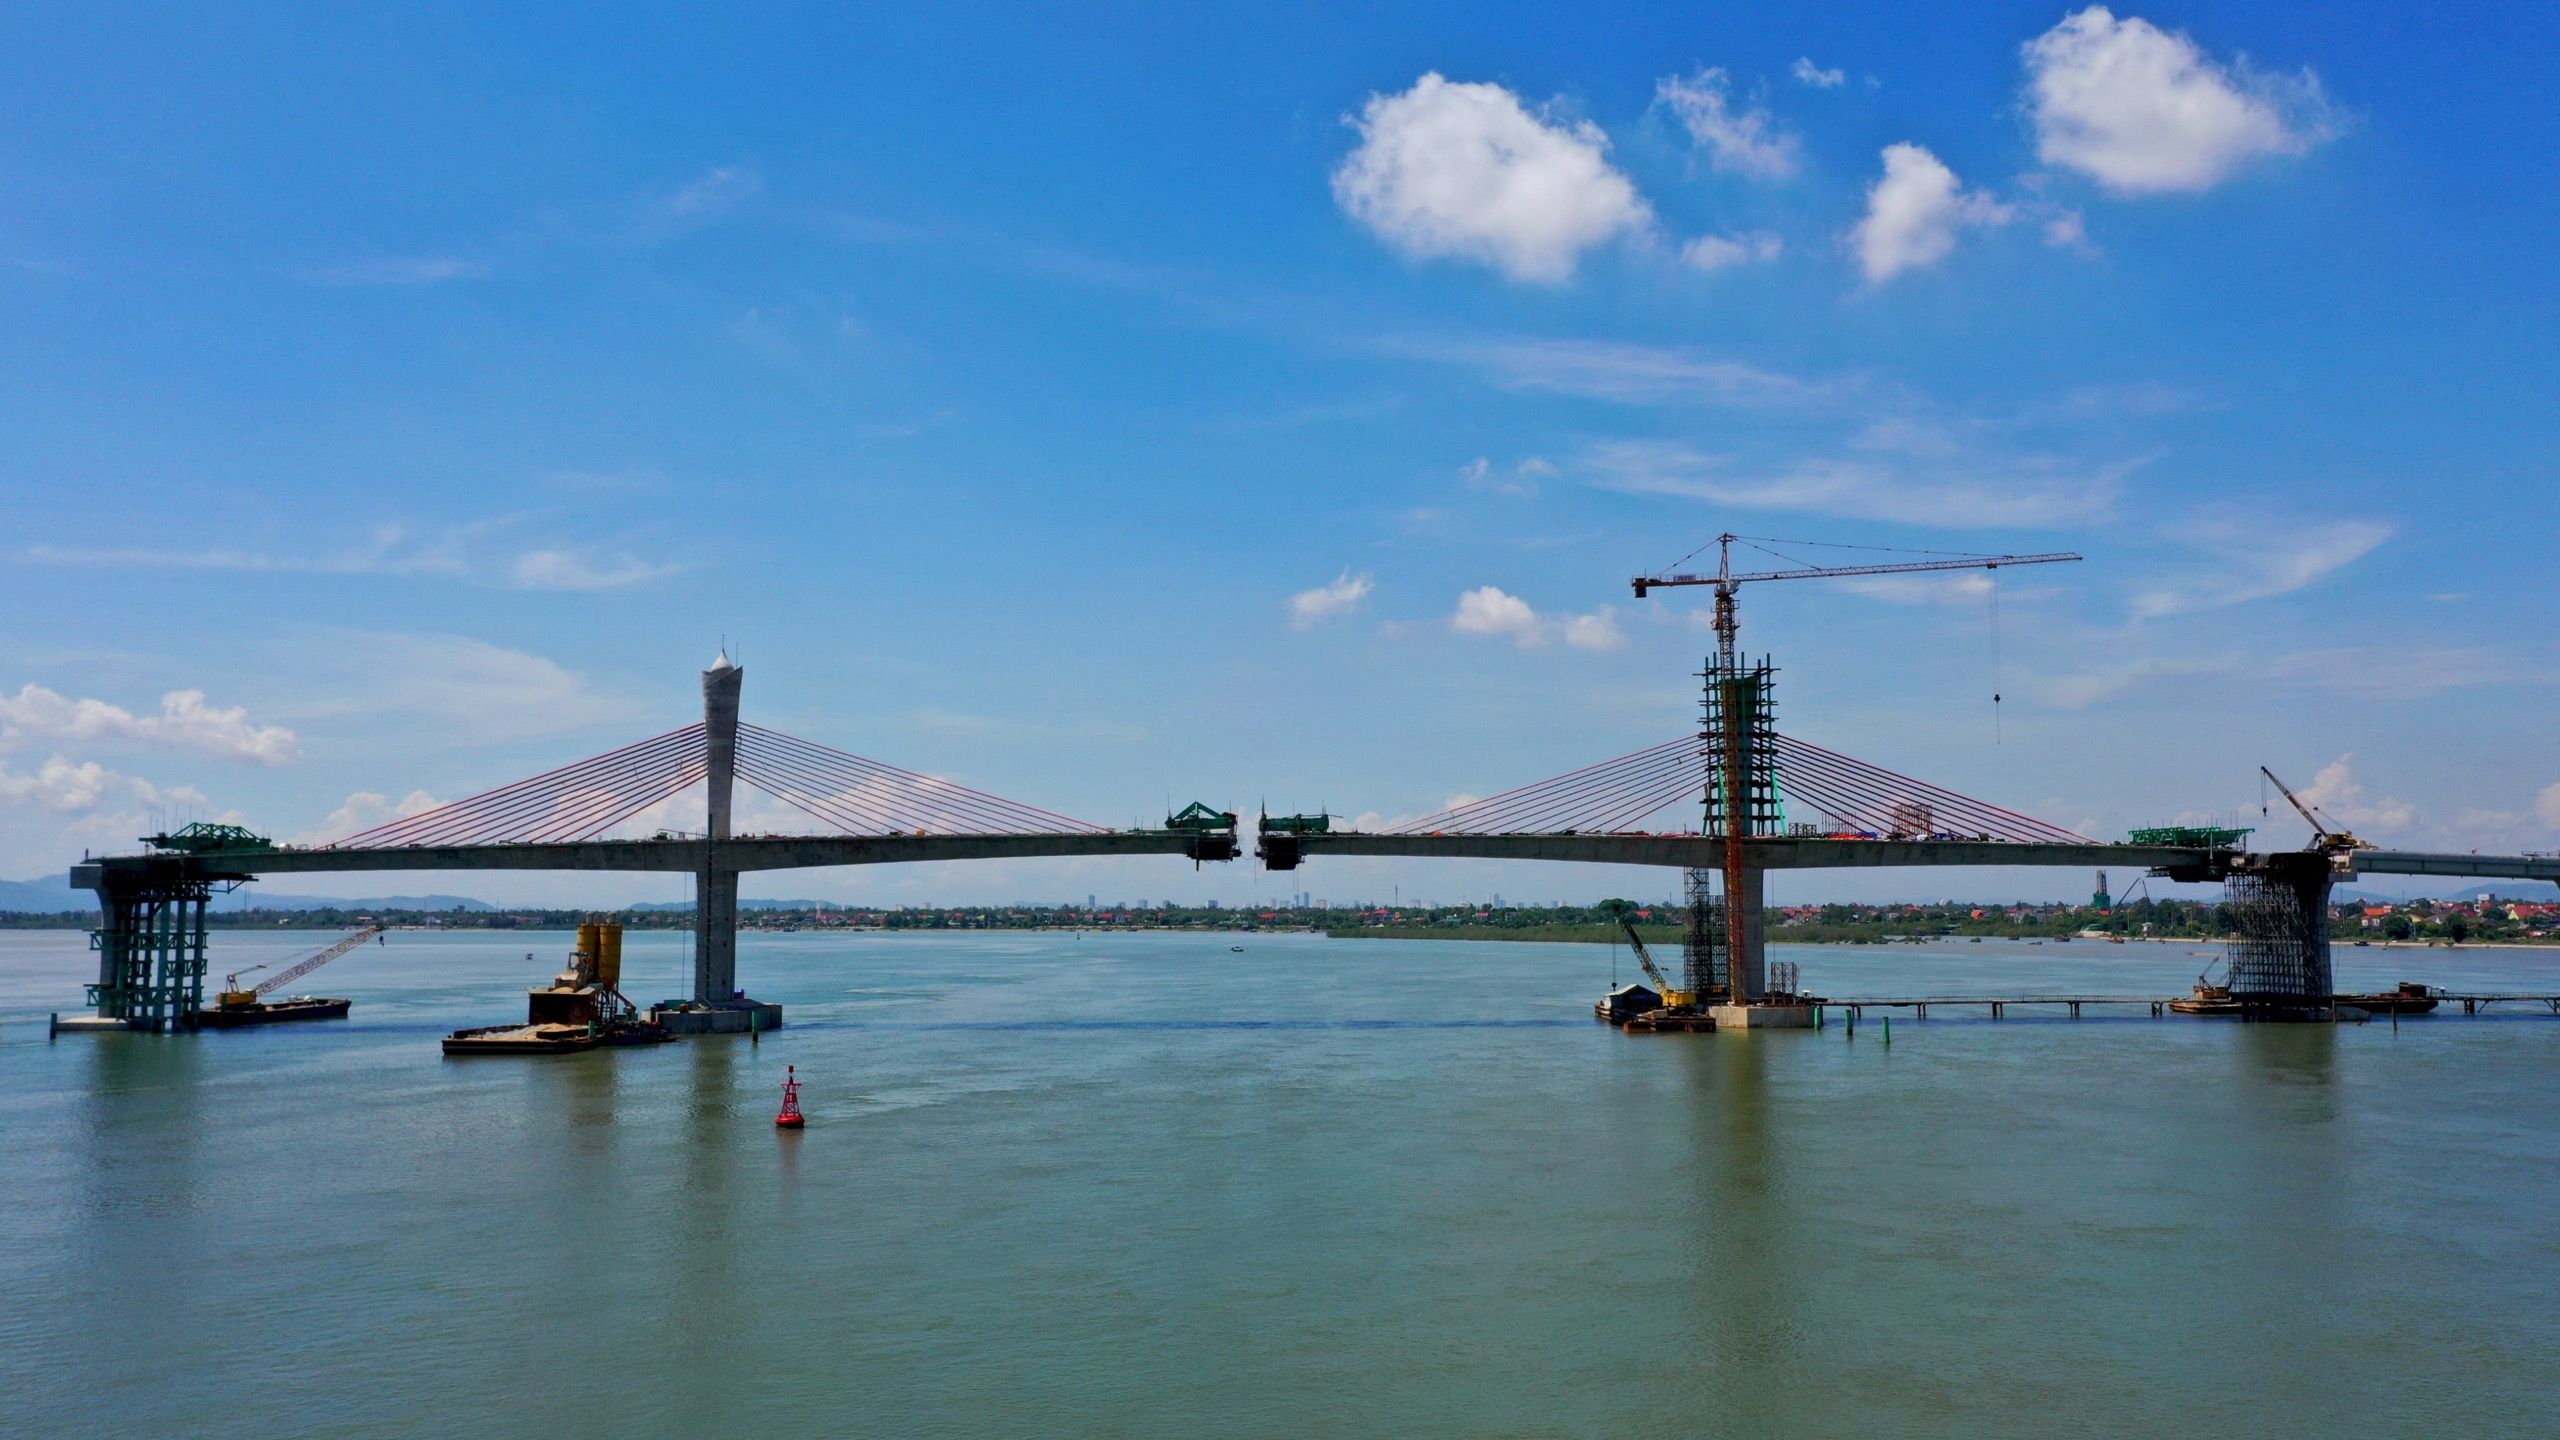 Cầu Cửa Hội bắc qua sông Lam sẽ chính thức được đưa vào sử dụng trong niềm hân hoan của người dân 2 tỉnh Nghệ An và Hà Tĩnh. Ảnh: Huy Cường